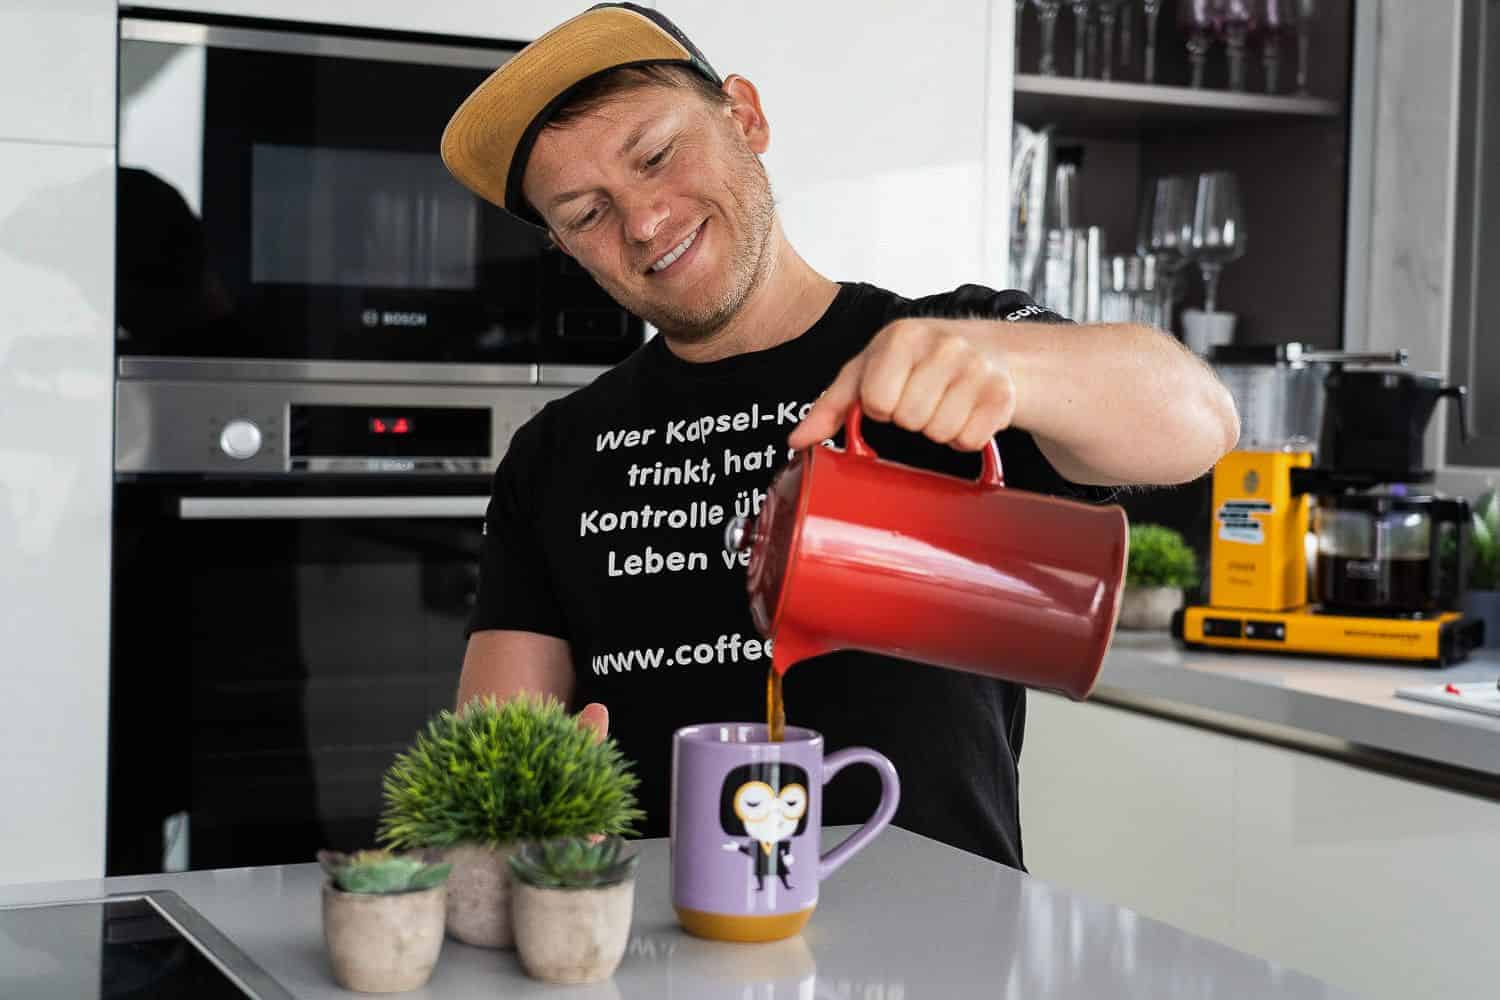 https://www.coffeeness.de/wp-content/uploads/2020/04/french-press-arne-fertiger-kaffee-einschenken.jpg